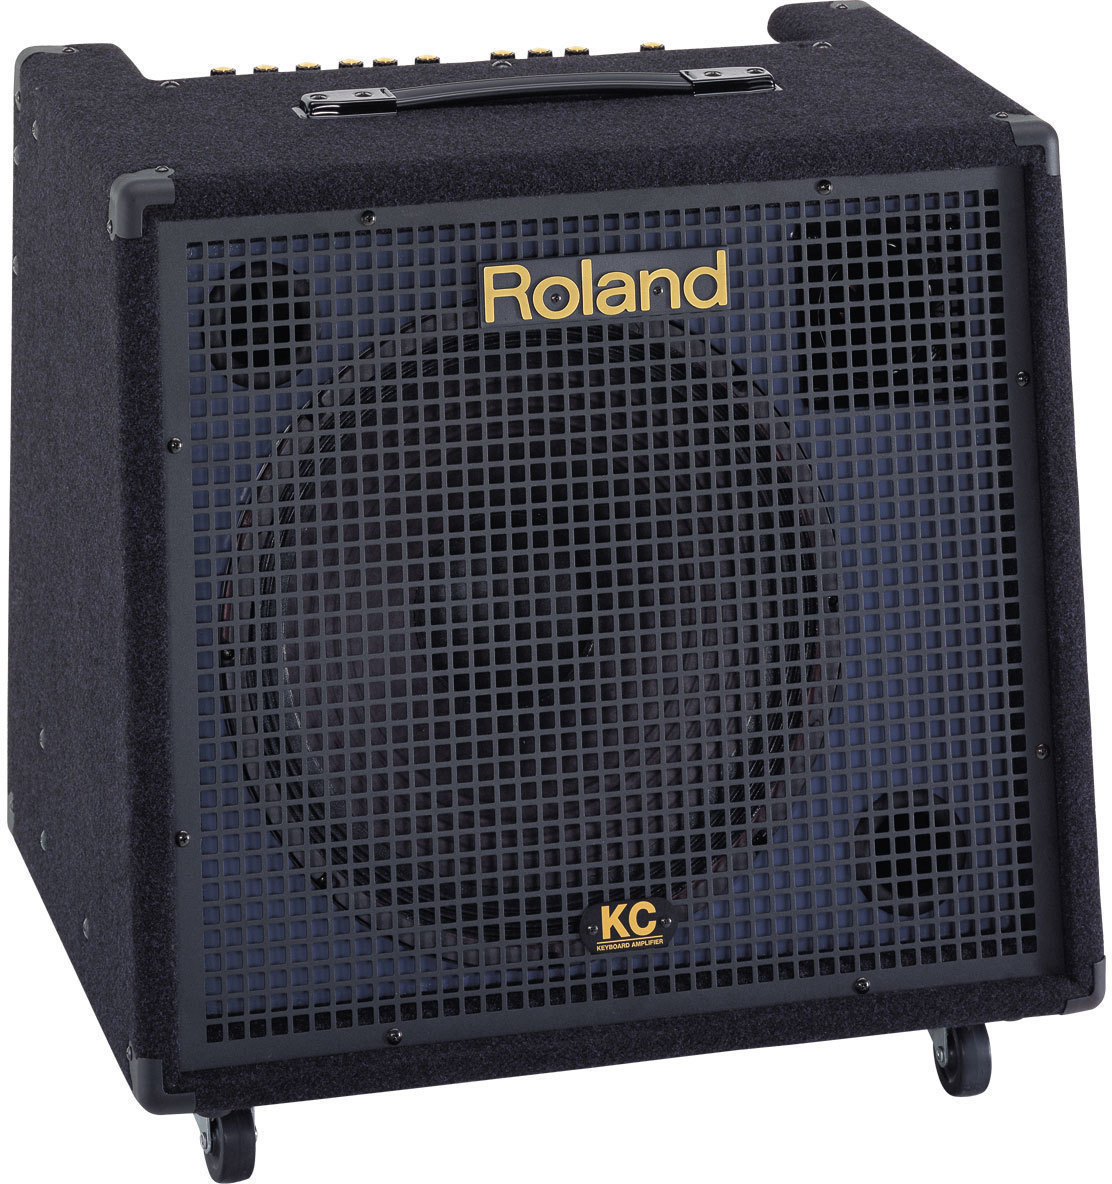 Geluidssysteem voor keyboard Roland KC-550